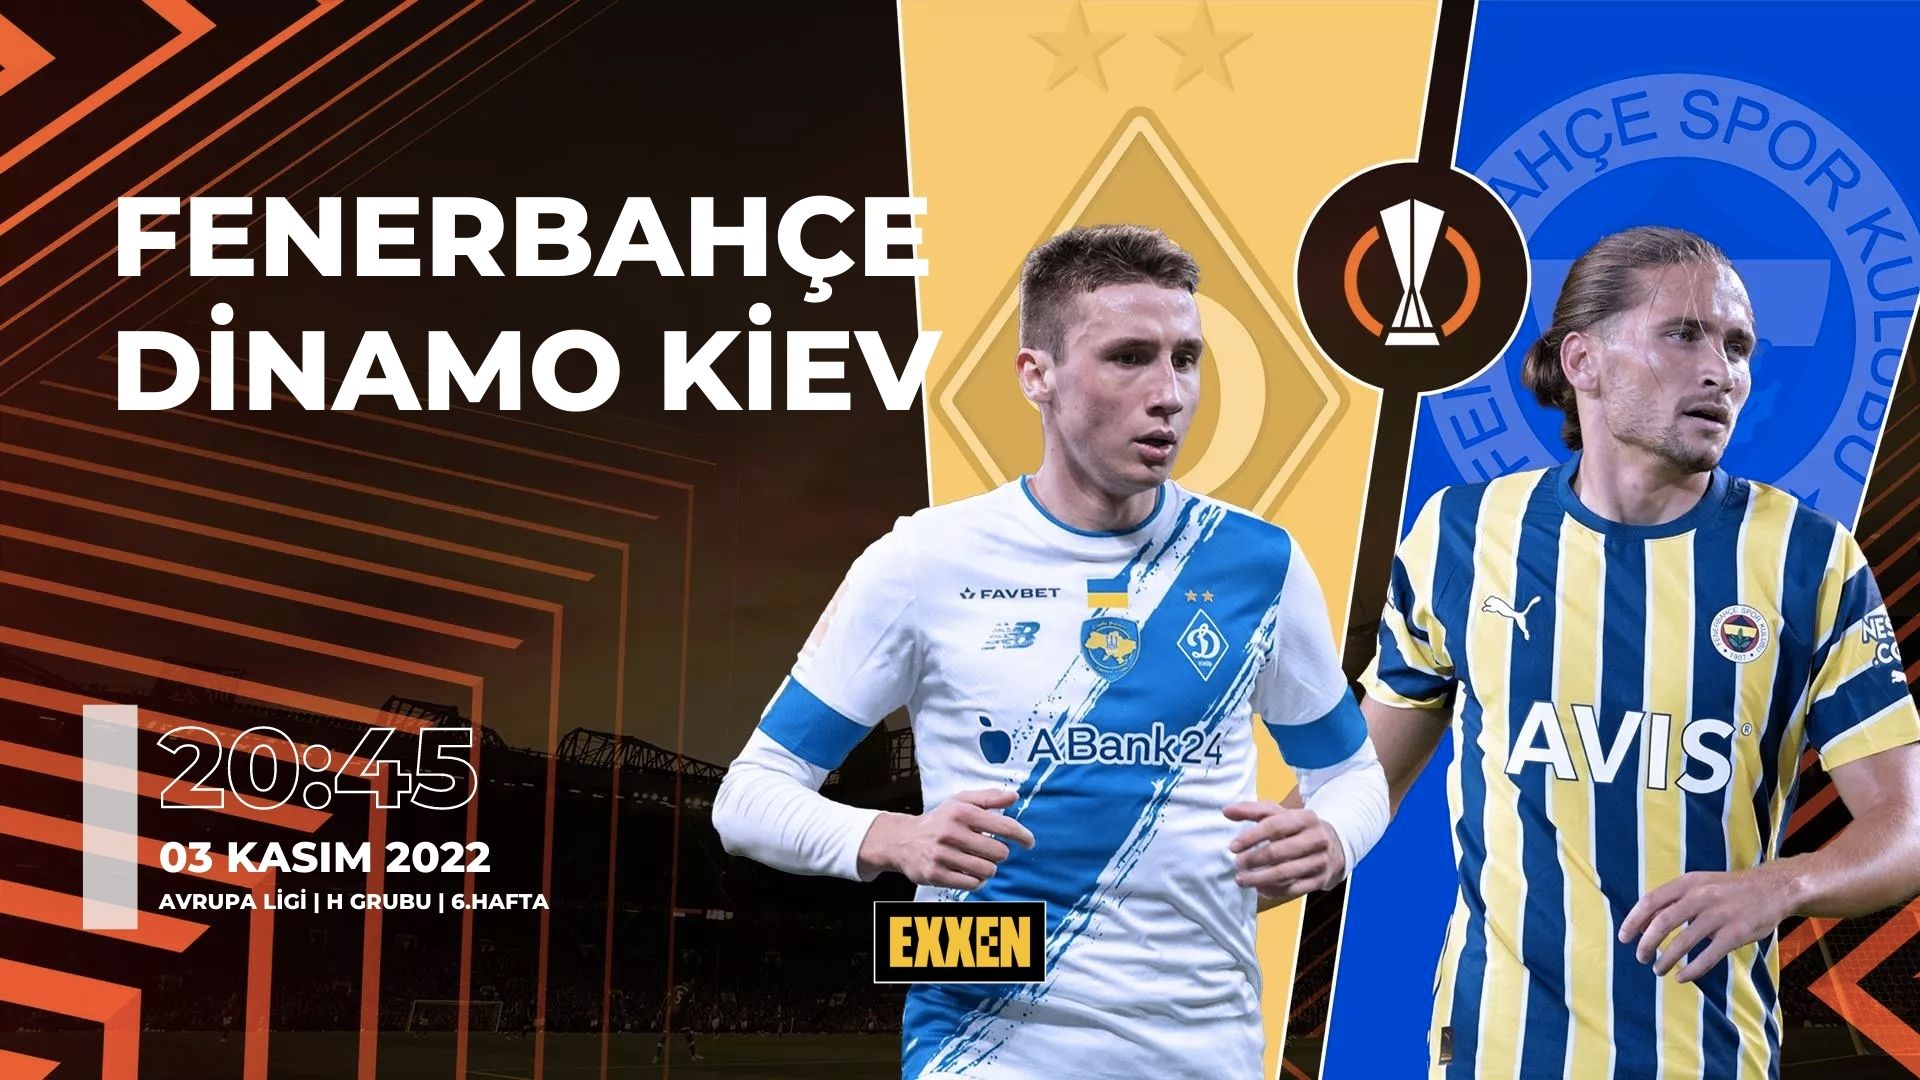 CANLI | Dinamo Kiev – Fenerbahçe UEFA Avrupa Ligi Maçı Canlı İzle (Exxen)